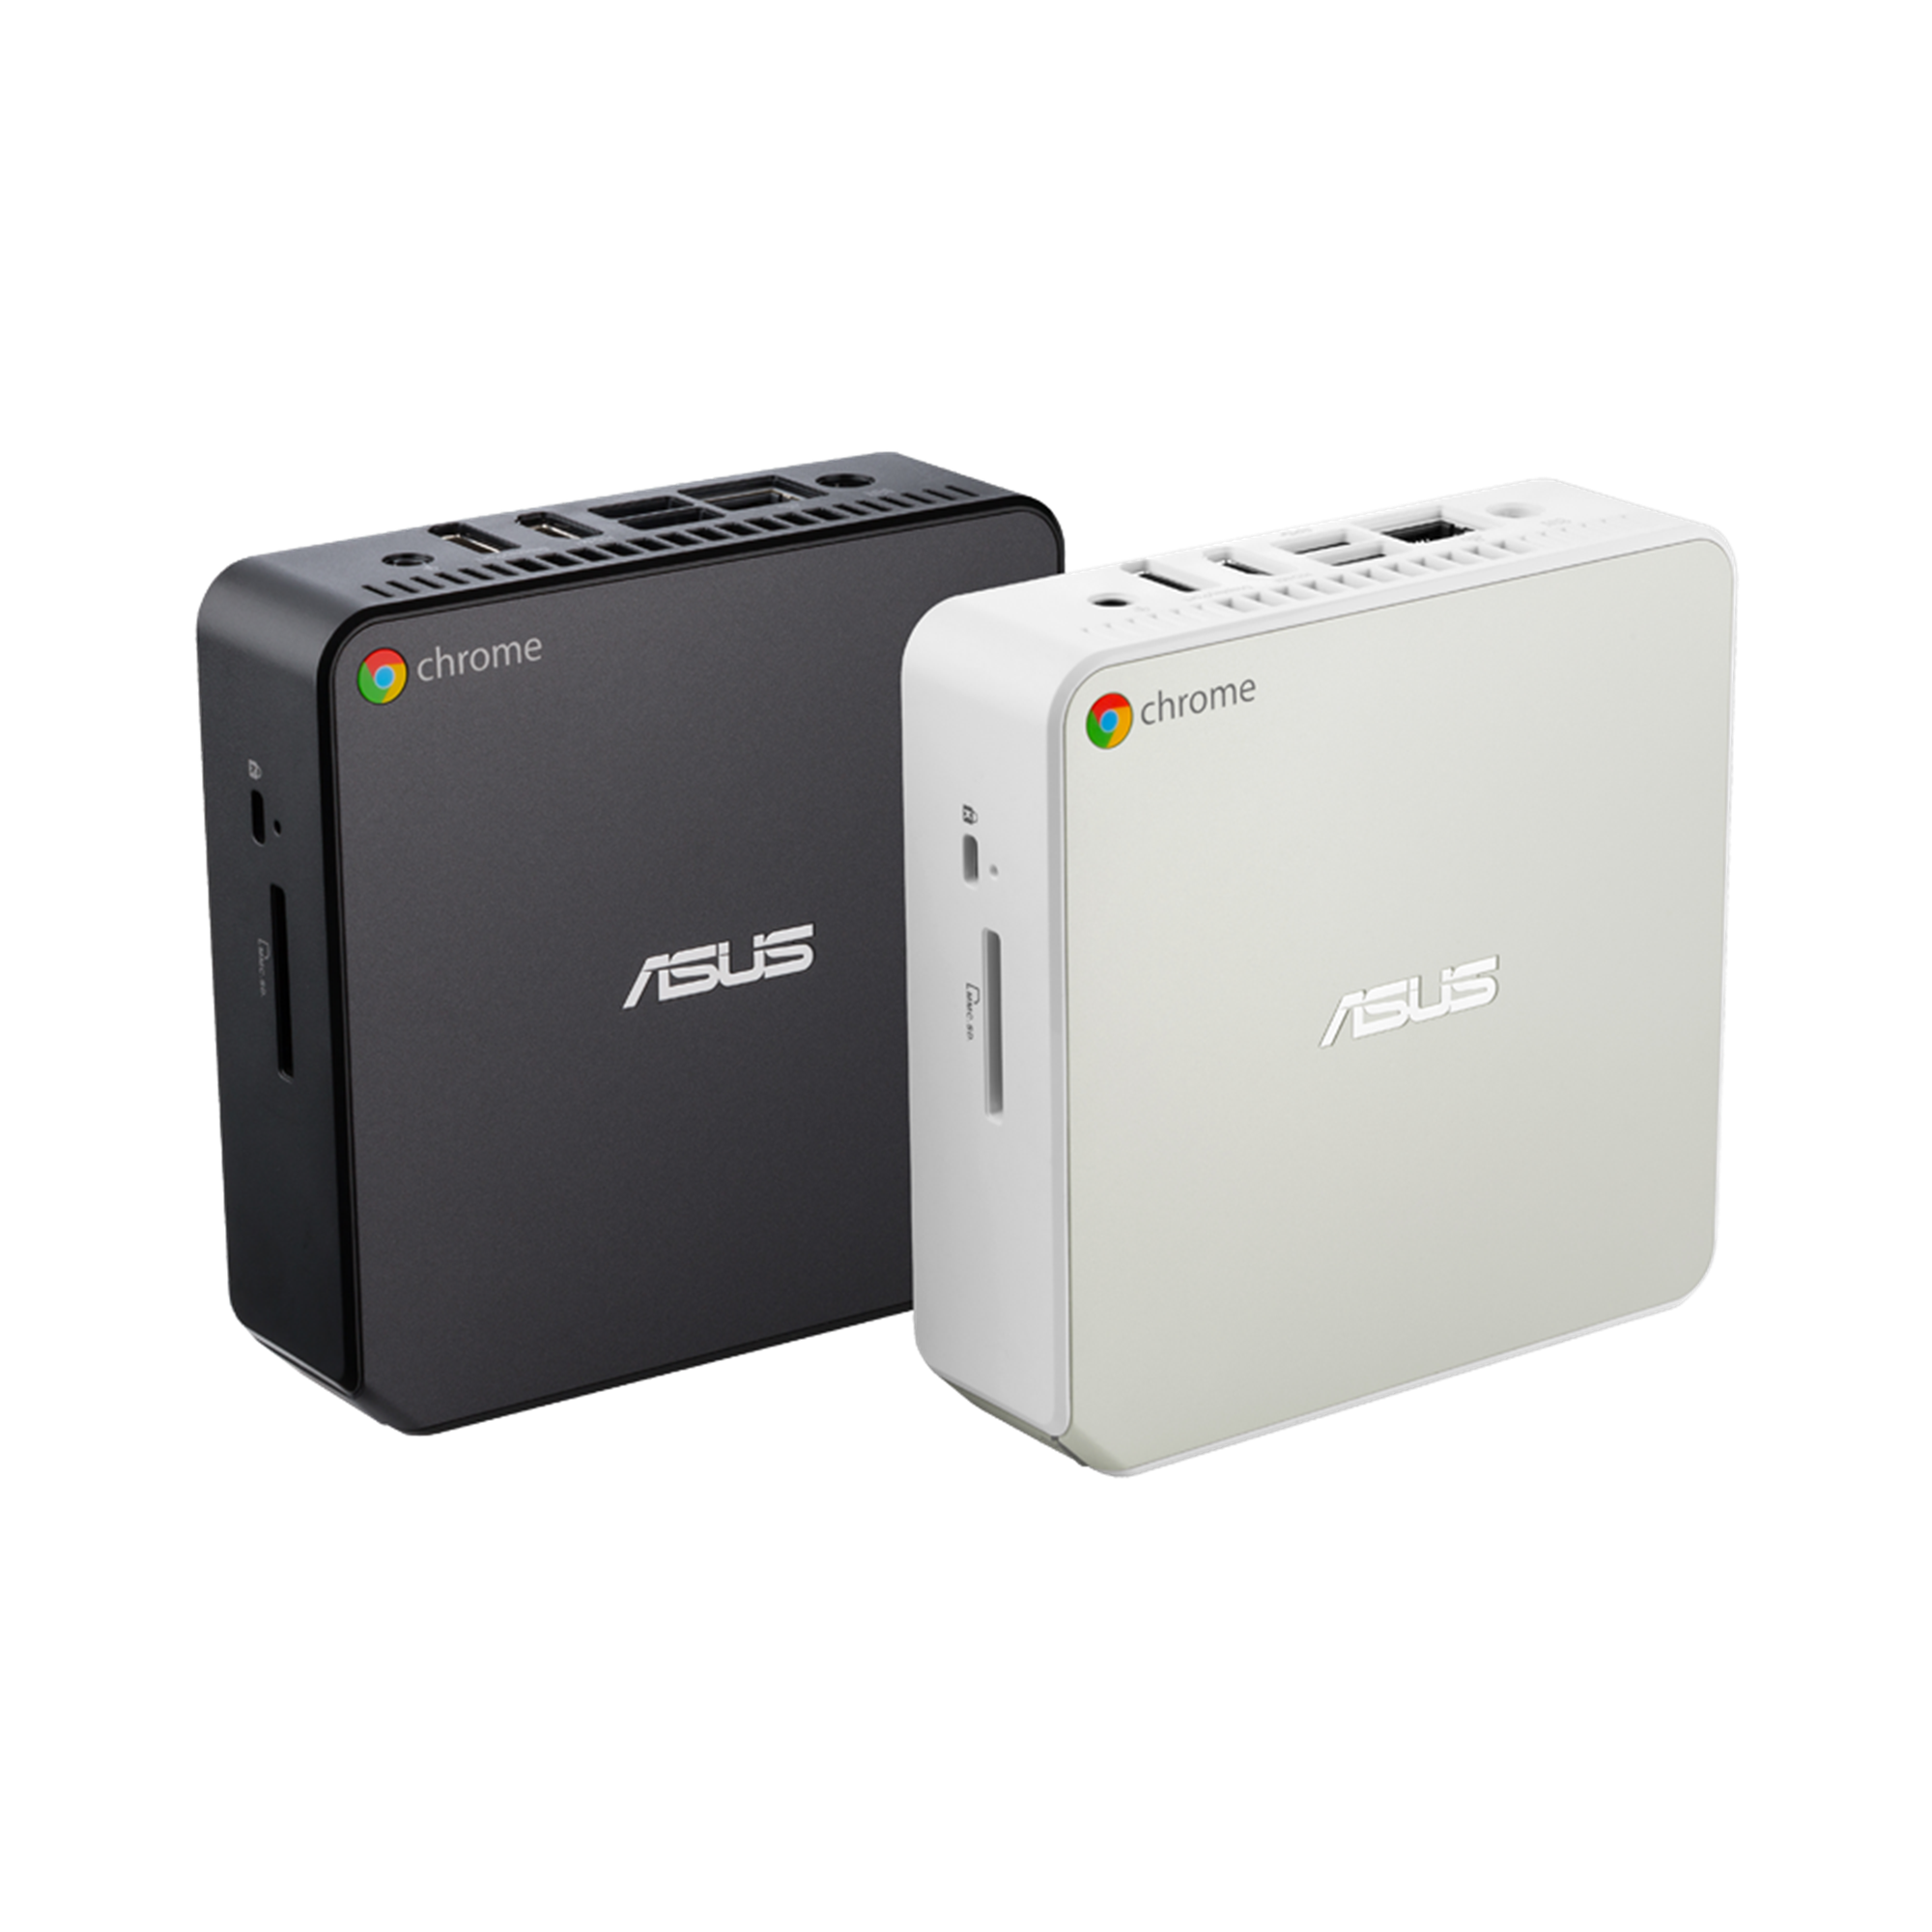 ASUS Chromebox CN62｜Mini PCs｜ASUS USA